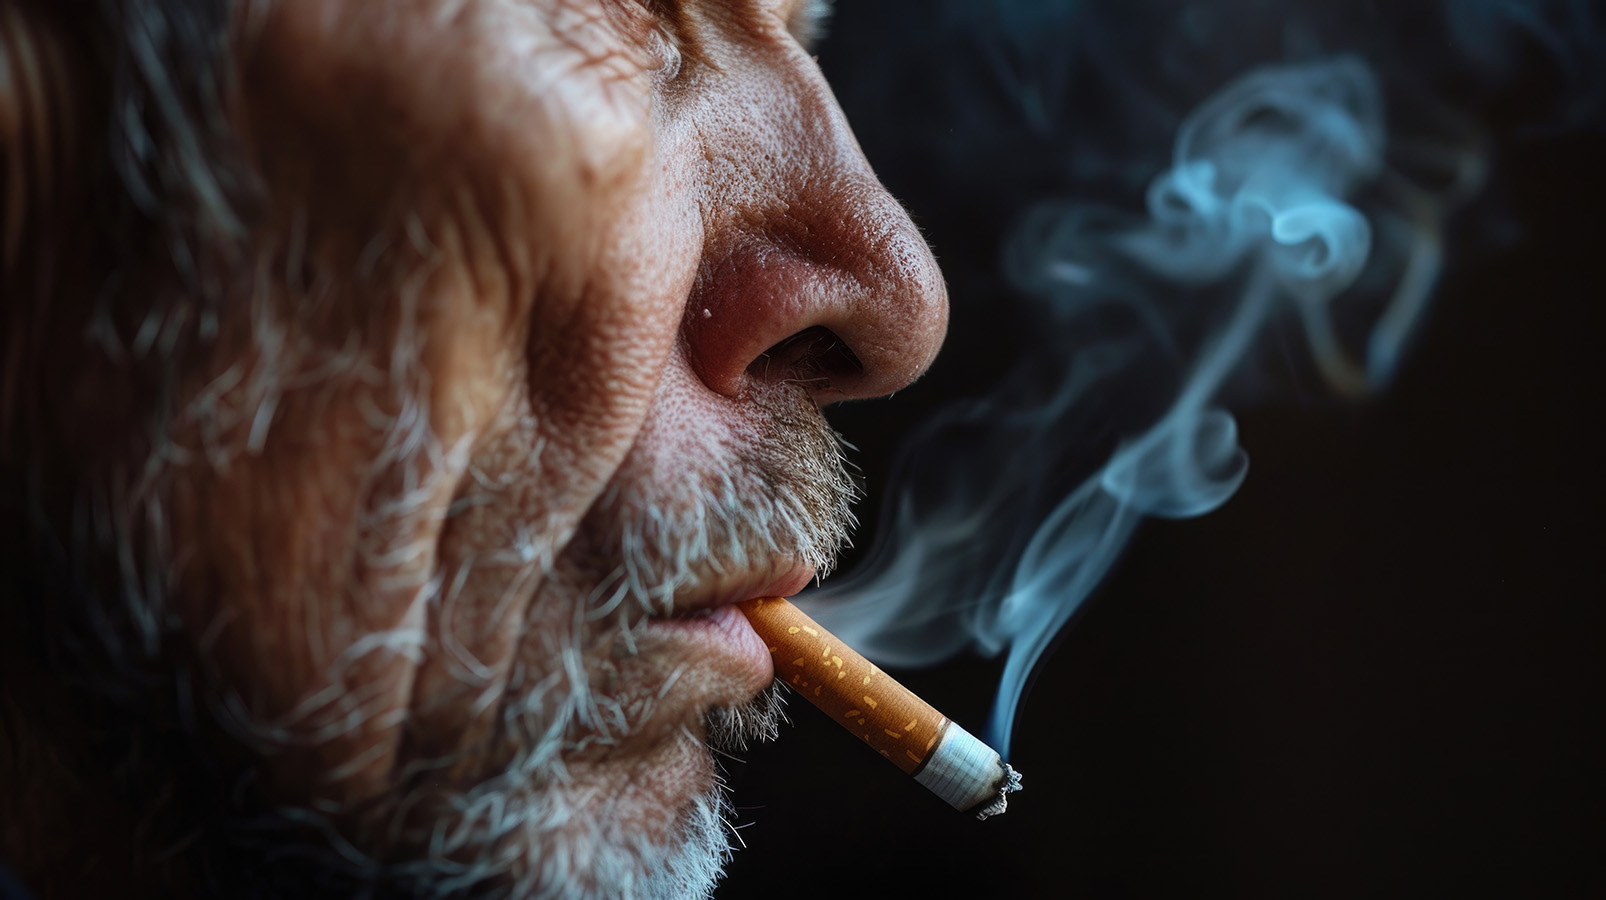 La exposición al tabaco al comienzo de la vida acelera el envejecimiento